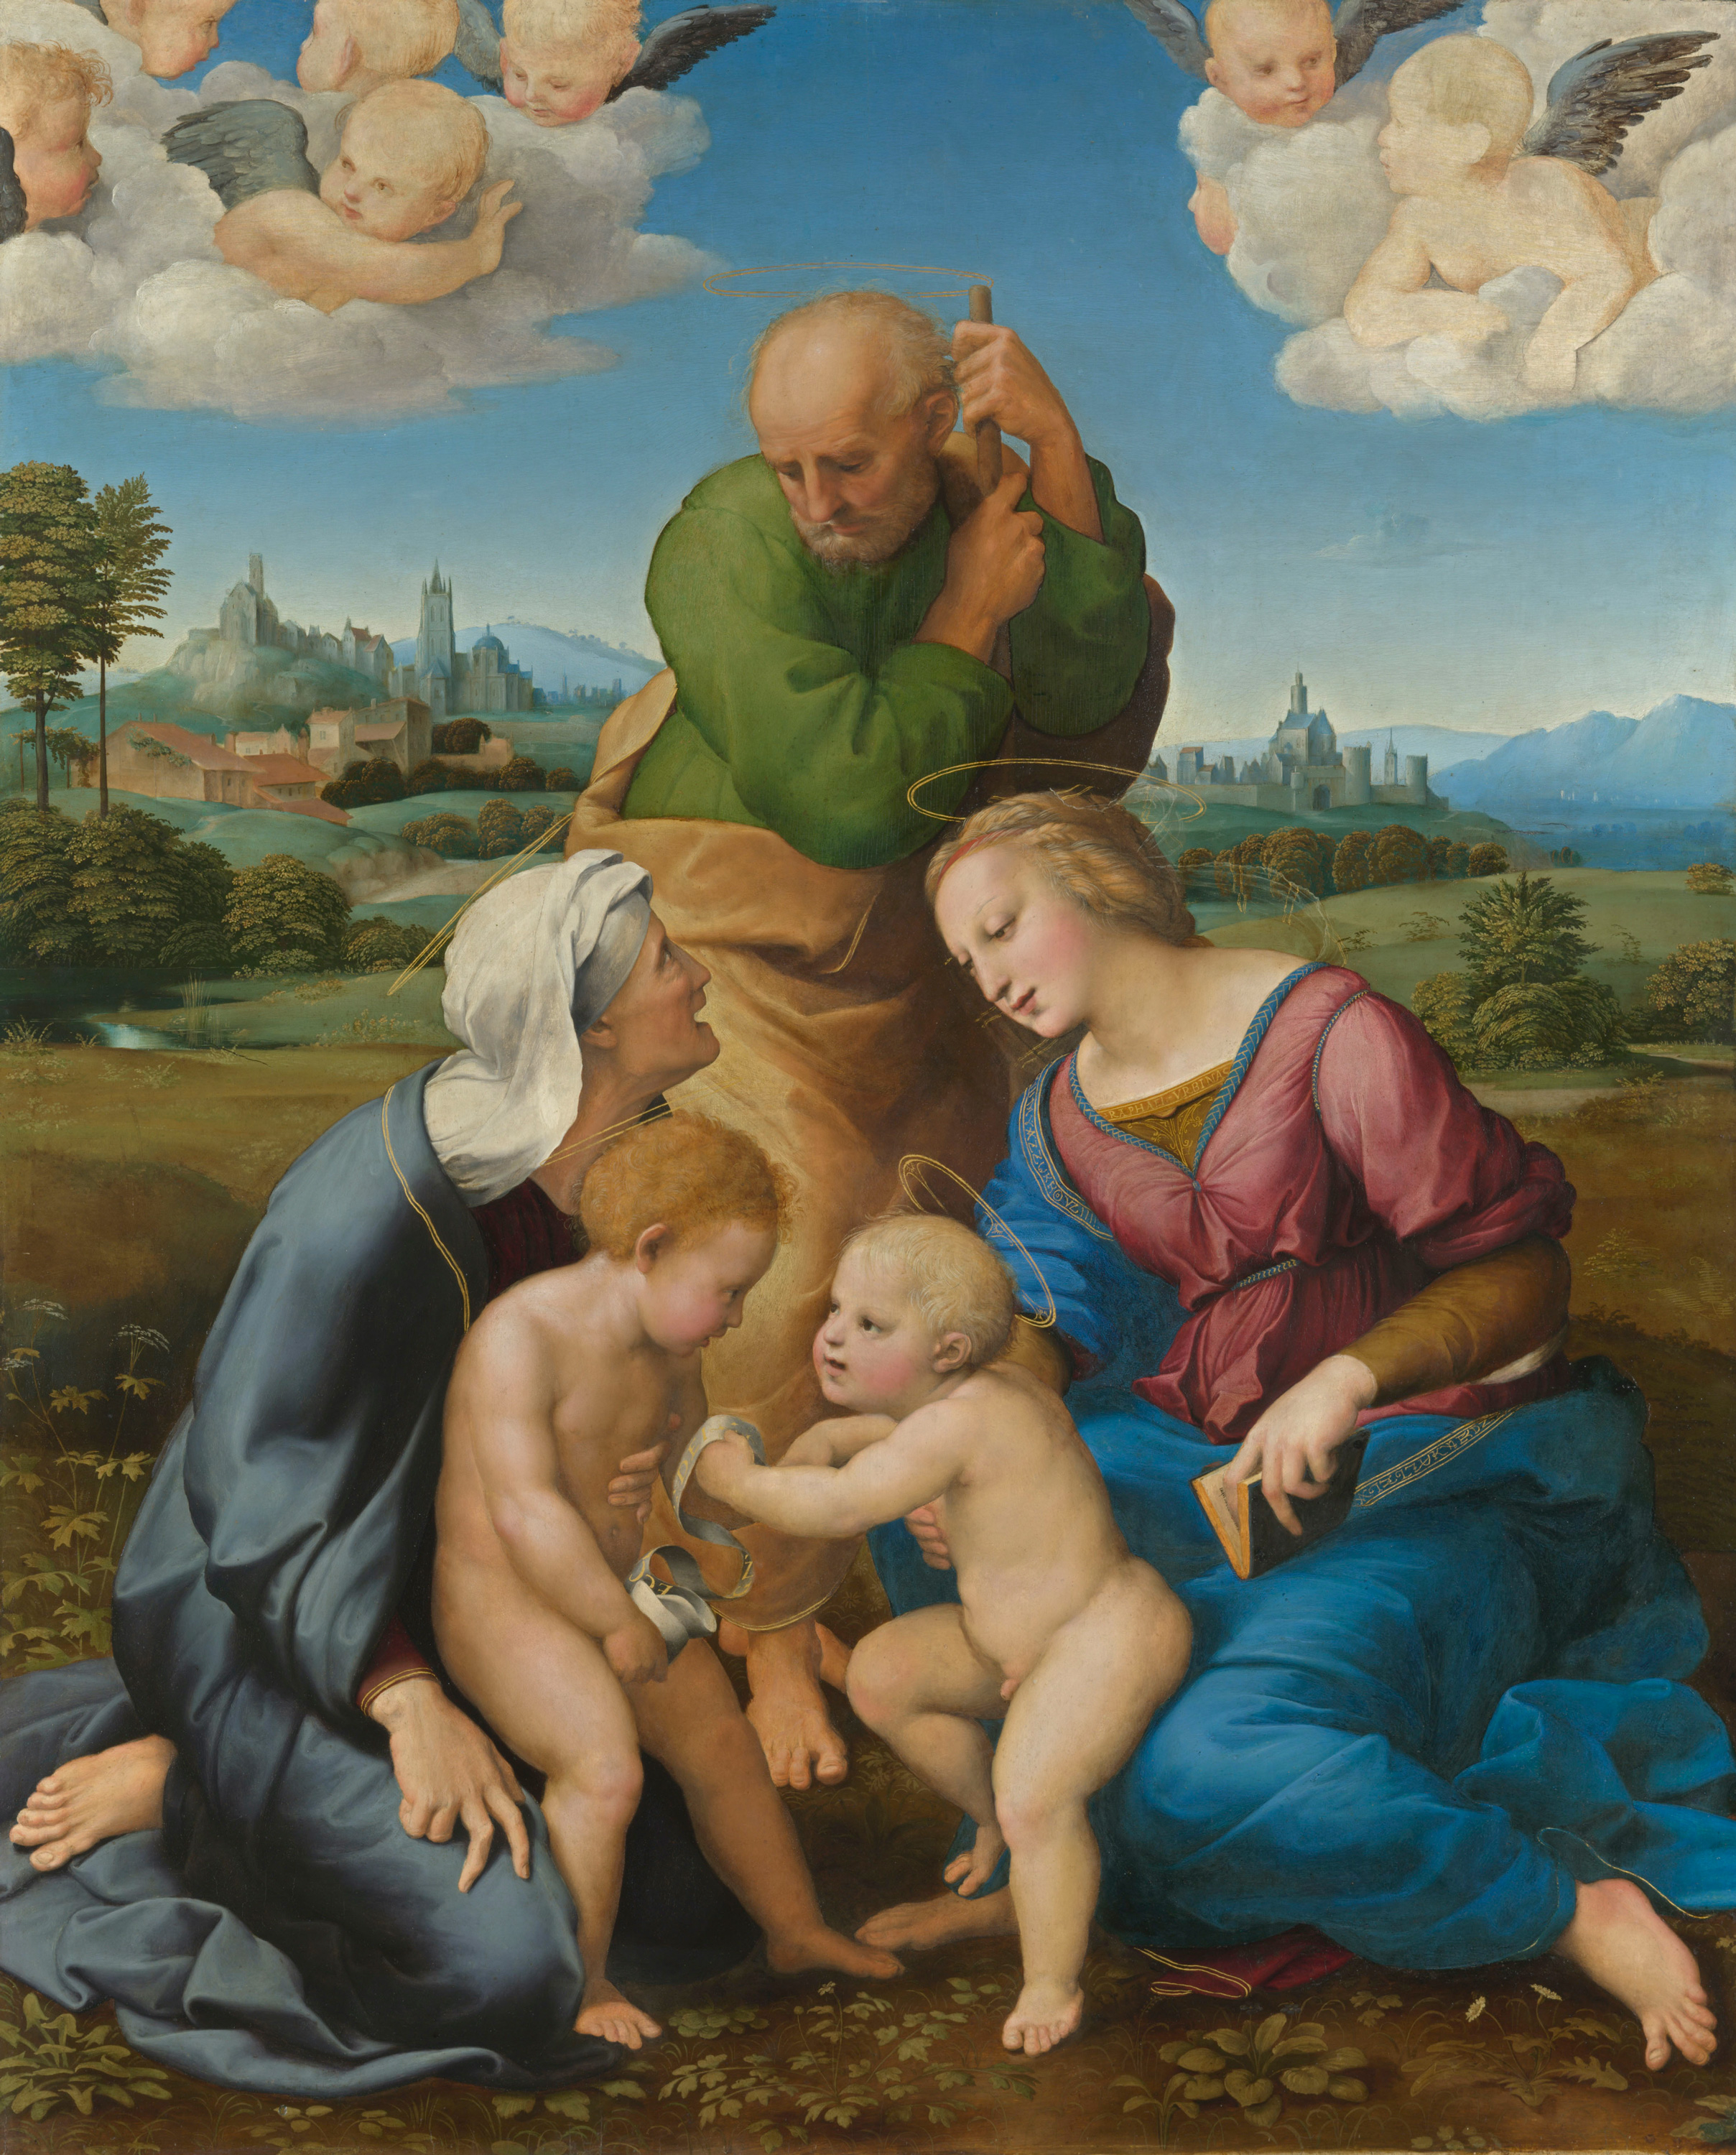 La Sainte Famille Canigiani by Raphaël Santi - 1505/1506 - 131 x 107 cm Alte Pinakothek